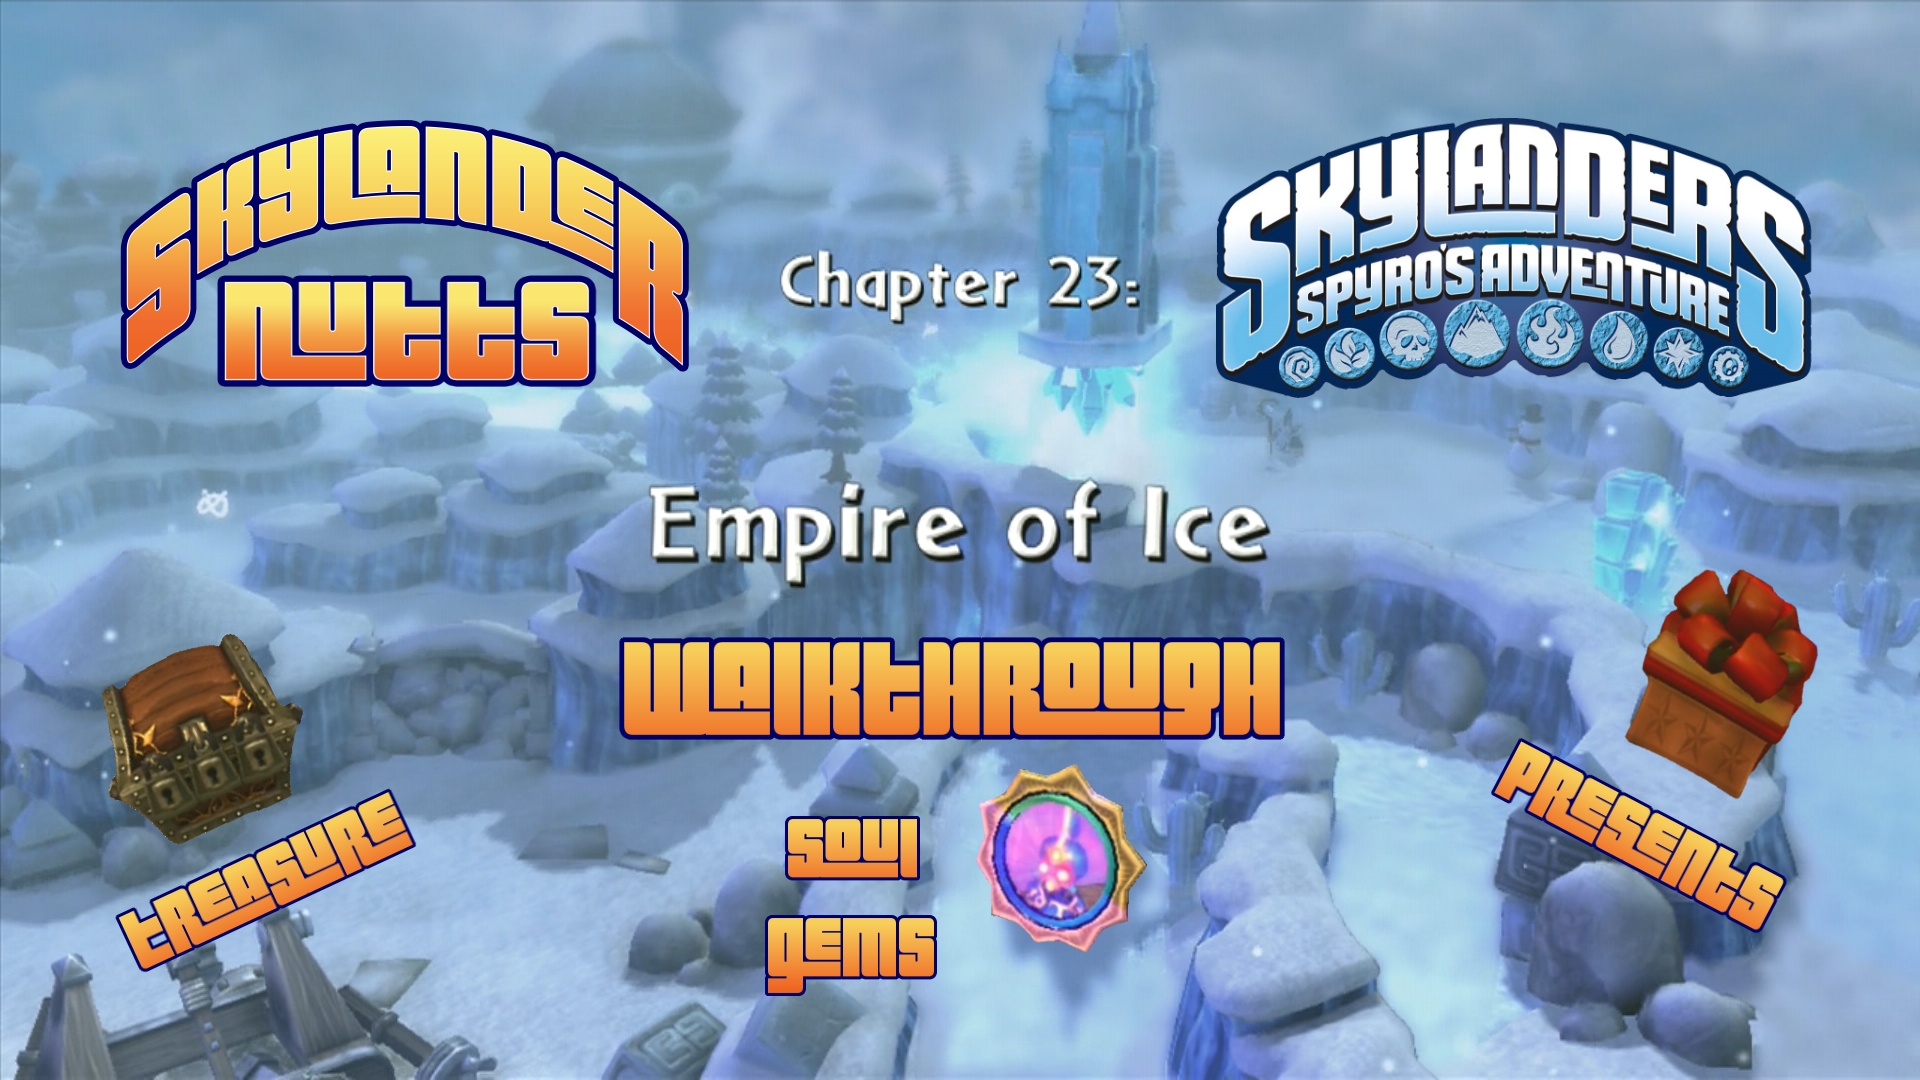 Spyros Adventure Walkthrough (Ch 23 - Empire of Ice)